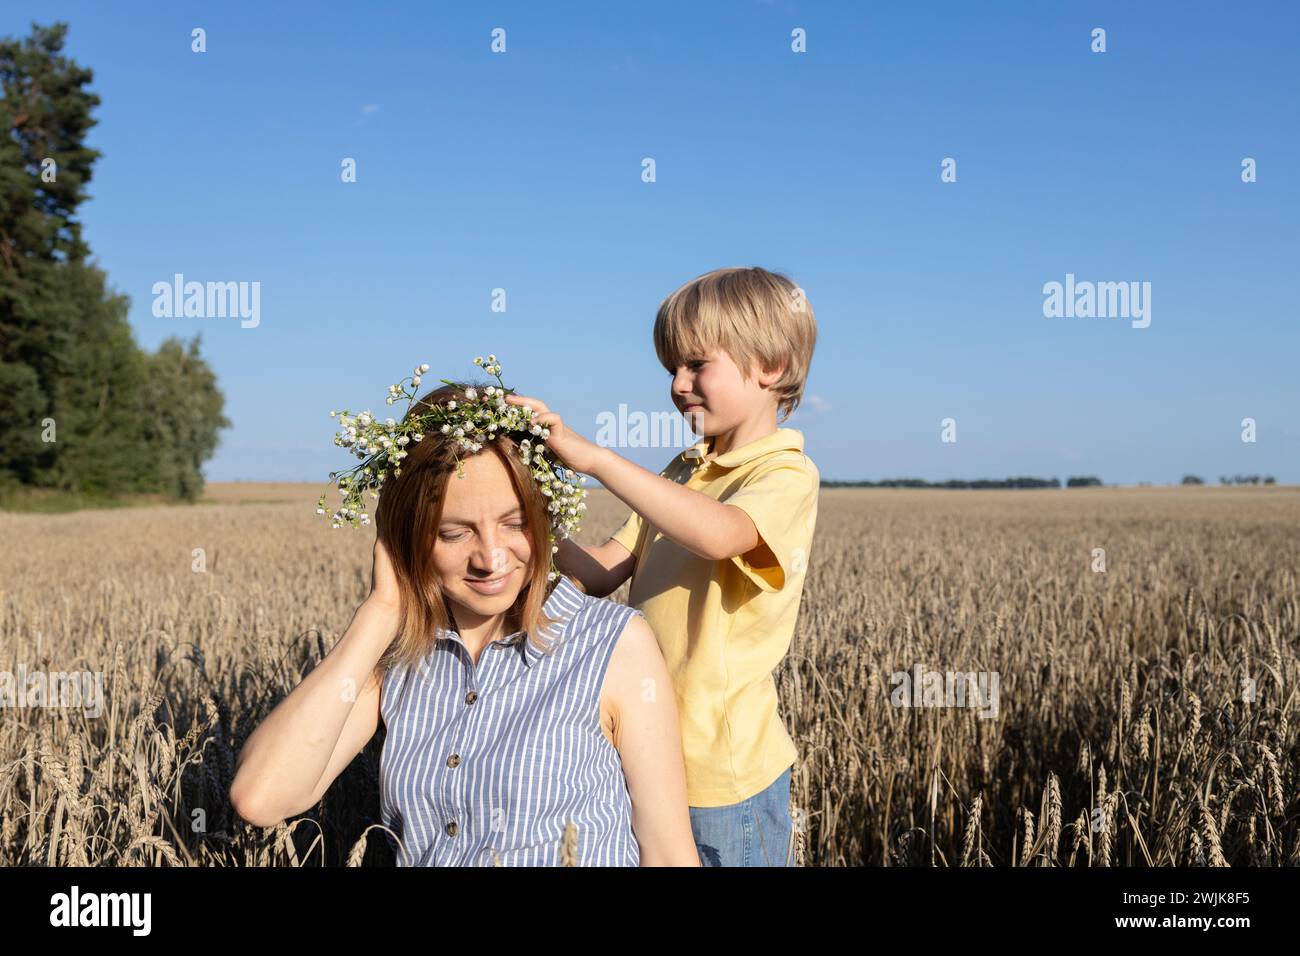 famiglia felice, madre e figlio in un campo di grano. Il concetto di amore dei genitori, maternità. il ragazzo mette una corona di margherite sulla testa della madre. buon divertimento Foto Stock